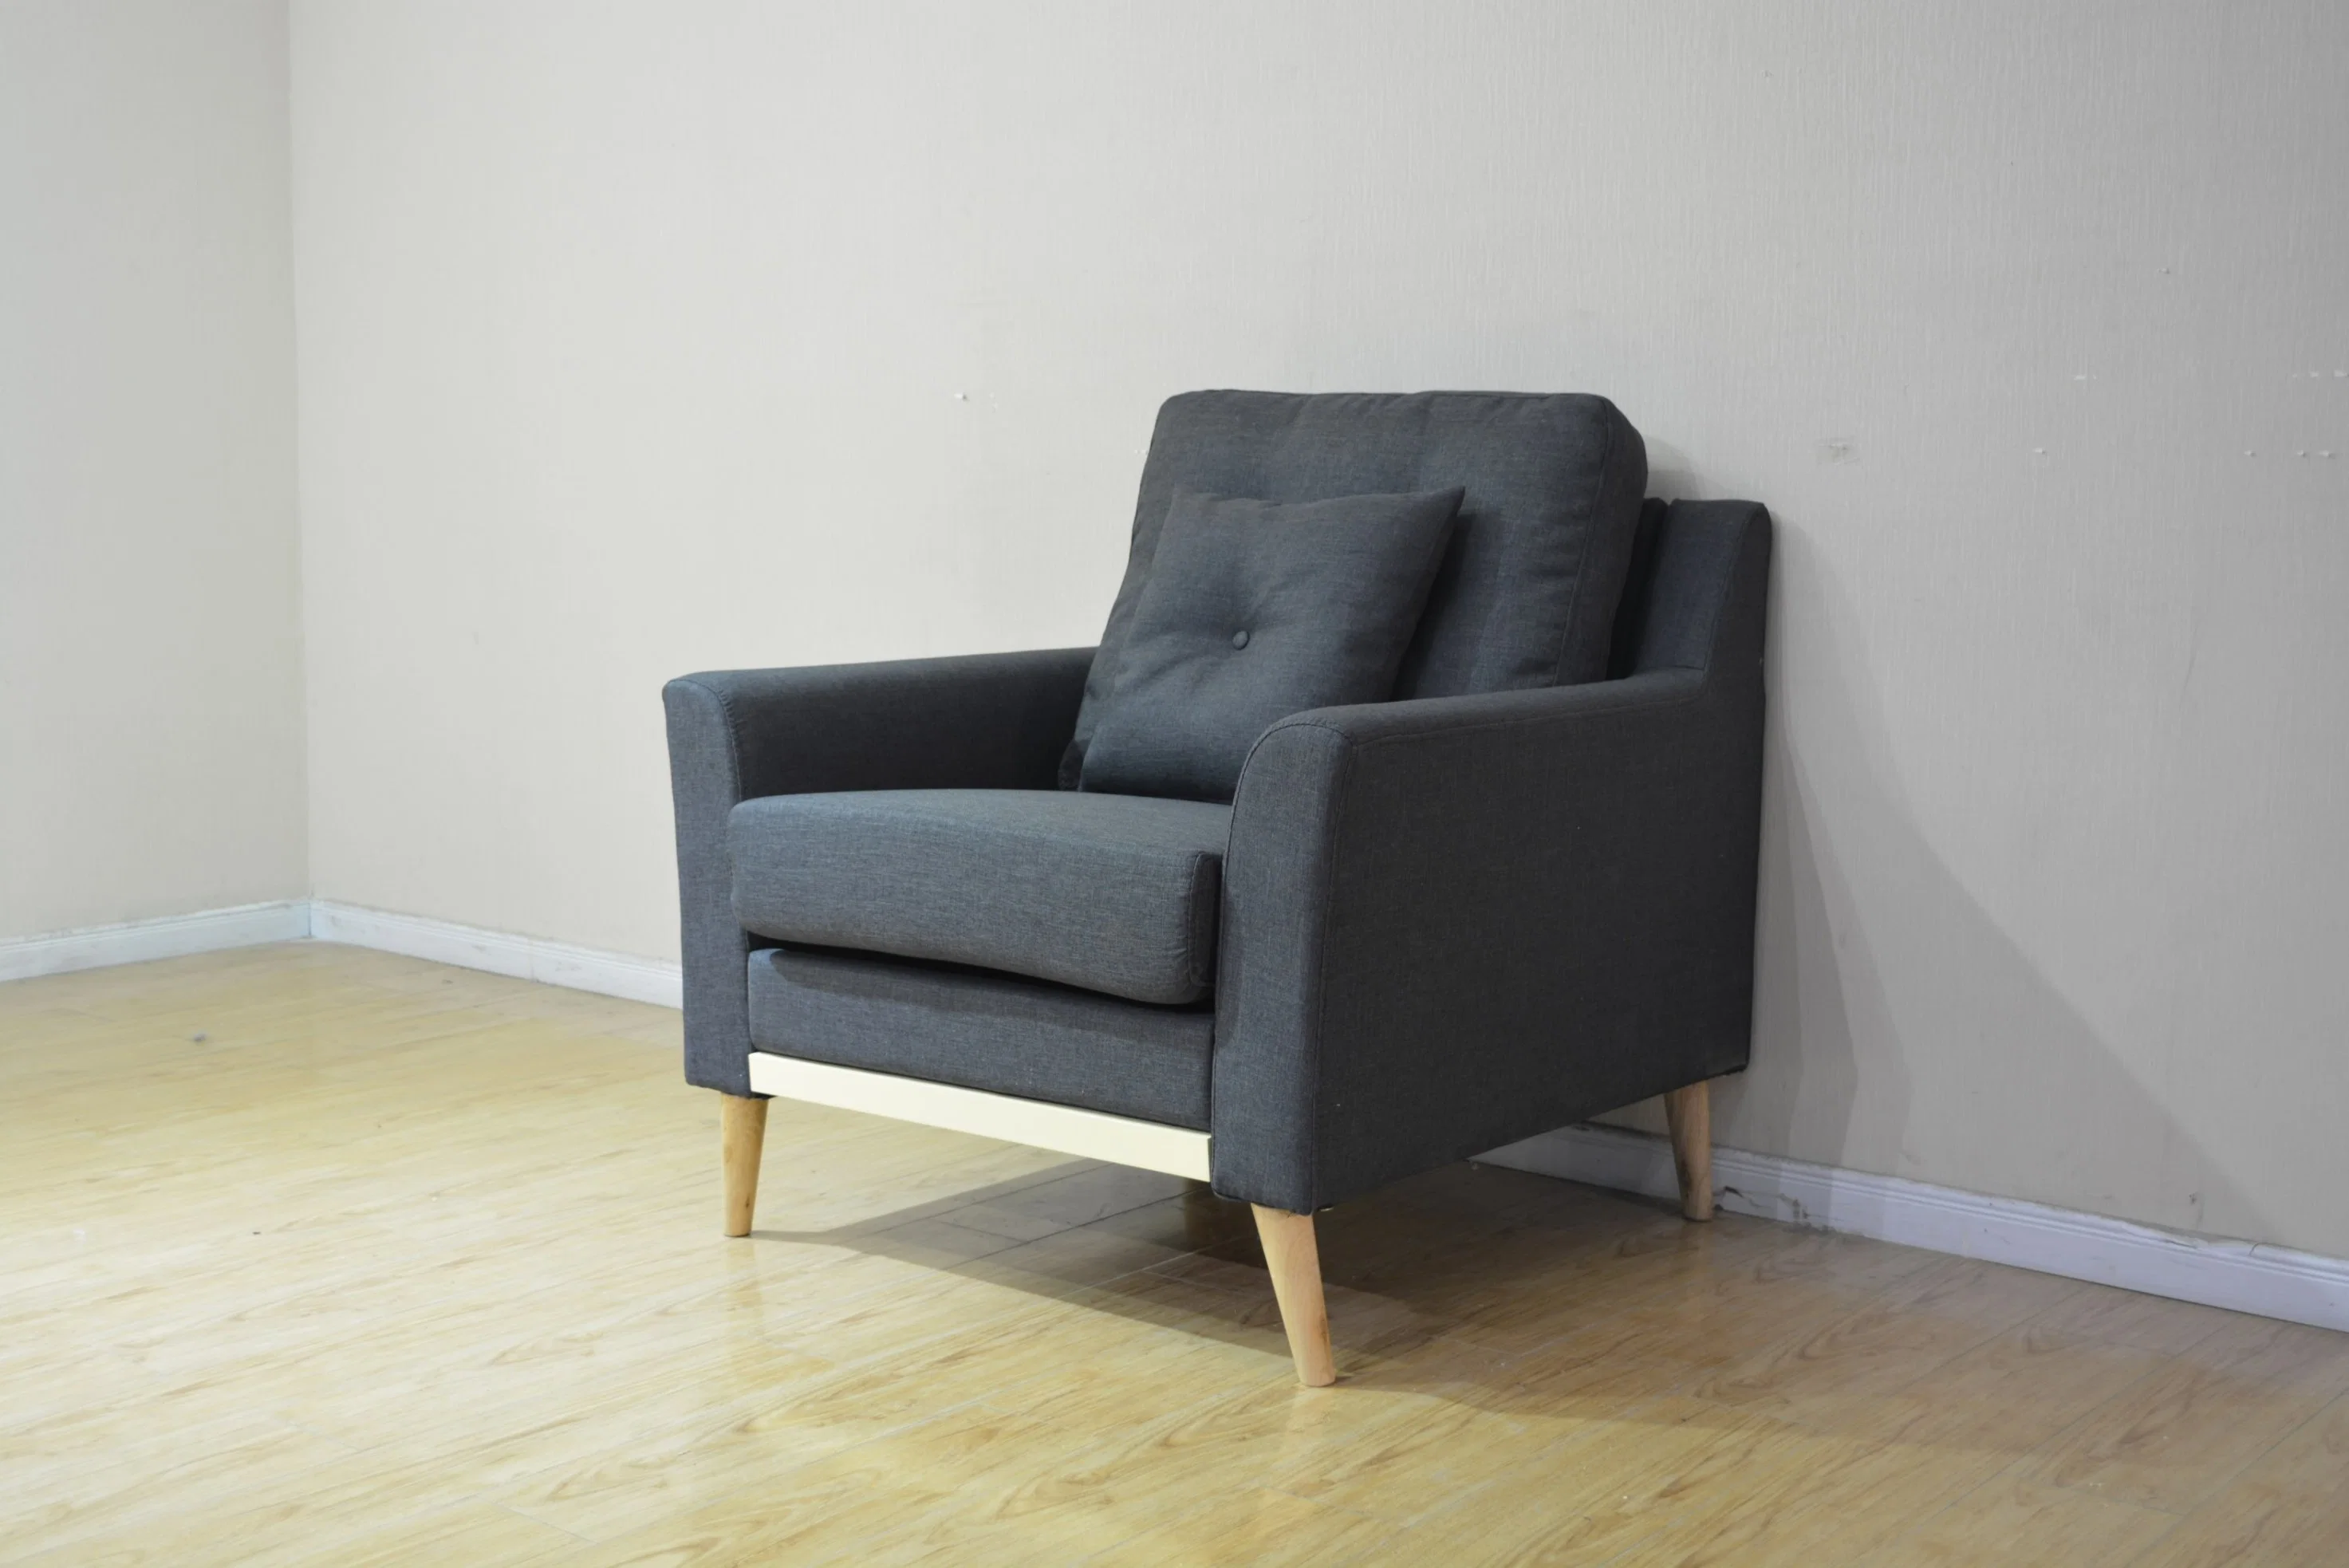 هوايانج الساخنة مصنوعة من الجلد المنزلي صنع أريكة أصلية أثاث Office حديث